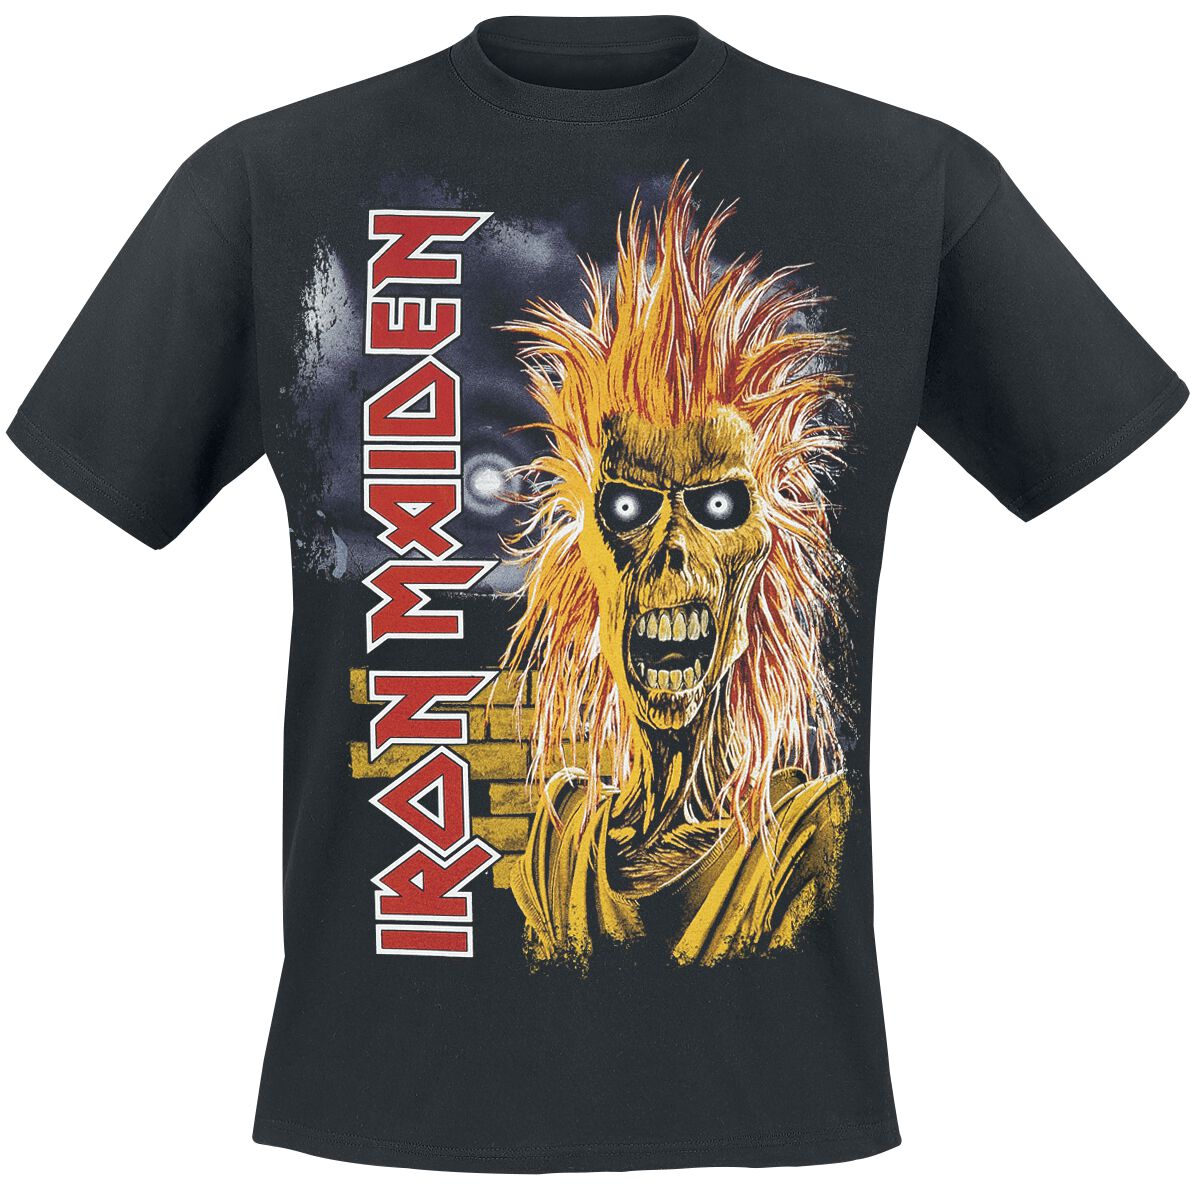 Iron Maiden 1st Album Tracklist T-Shirt schwarz in XL